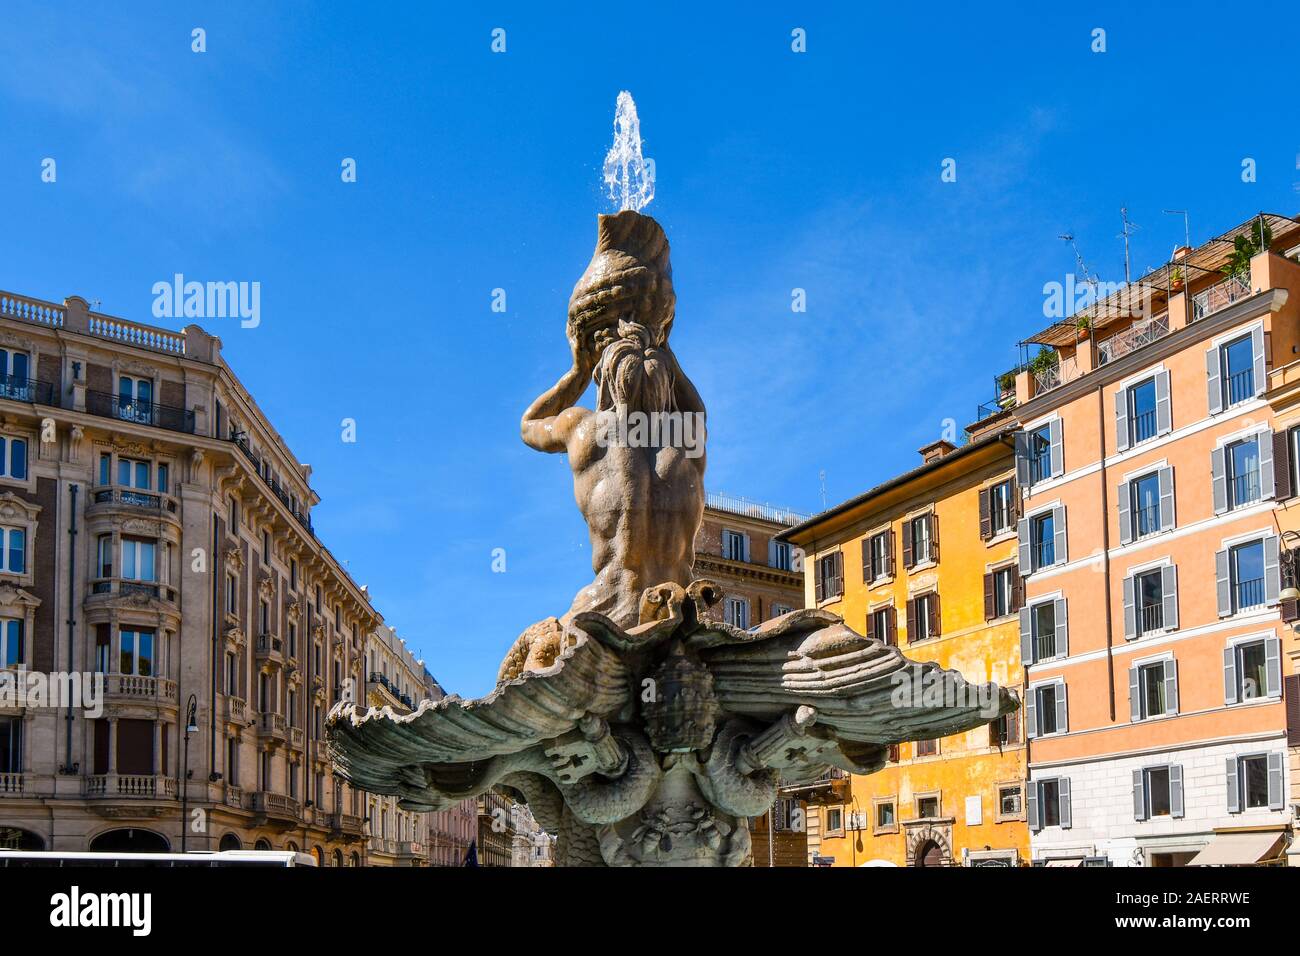 La fontaine du Triton, sur la Piazza Barberini, Rome Italie, représentant Triton, moitié homme et moitié-poisson, faisant retentir son klaxon pour calmer les eaux Banque D'Images